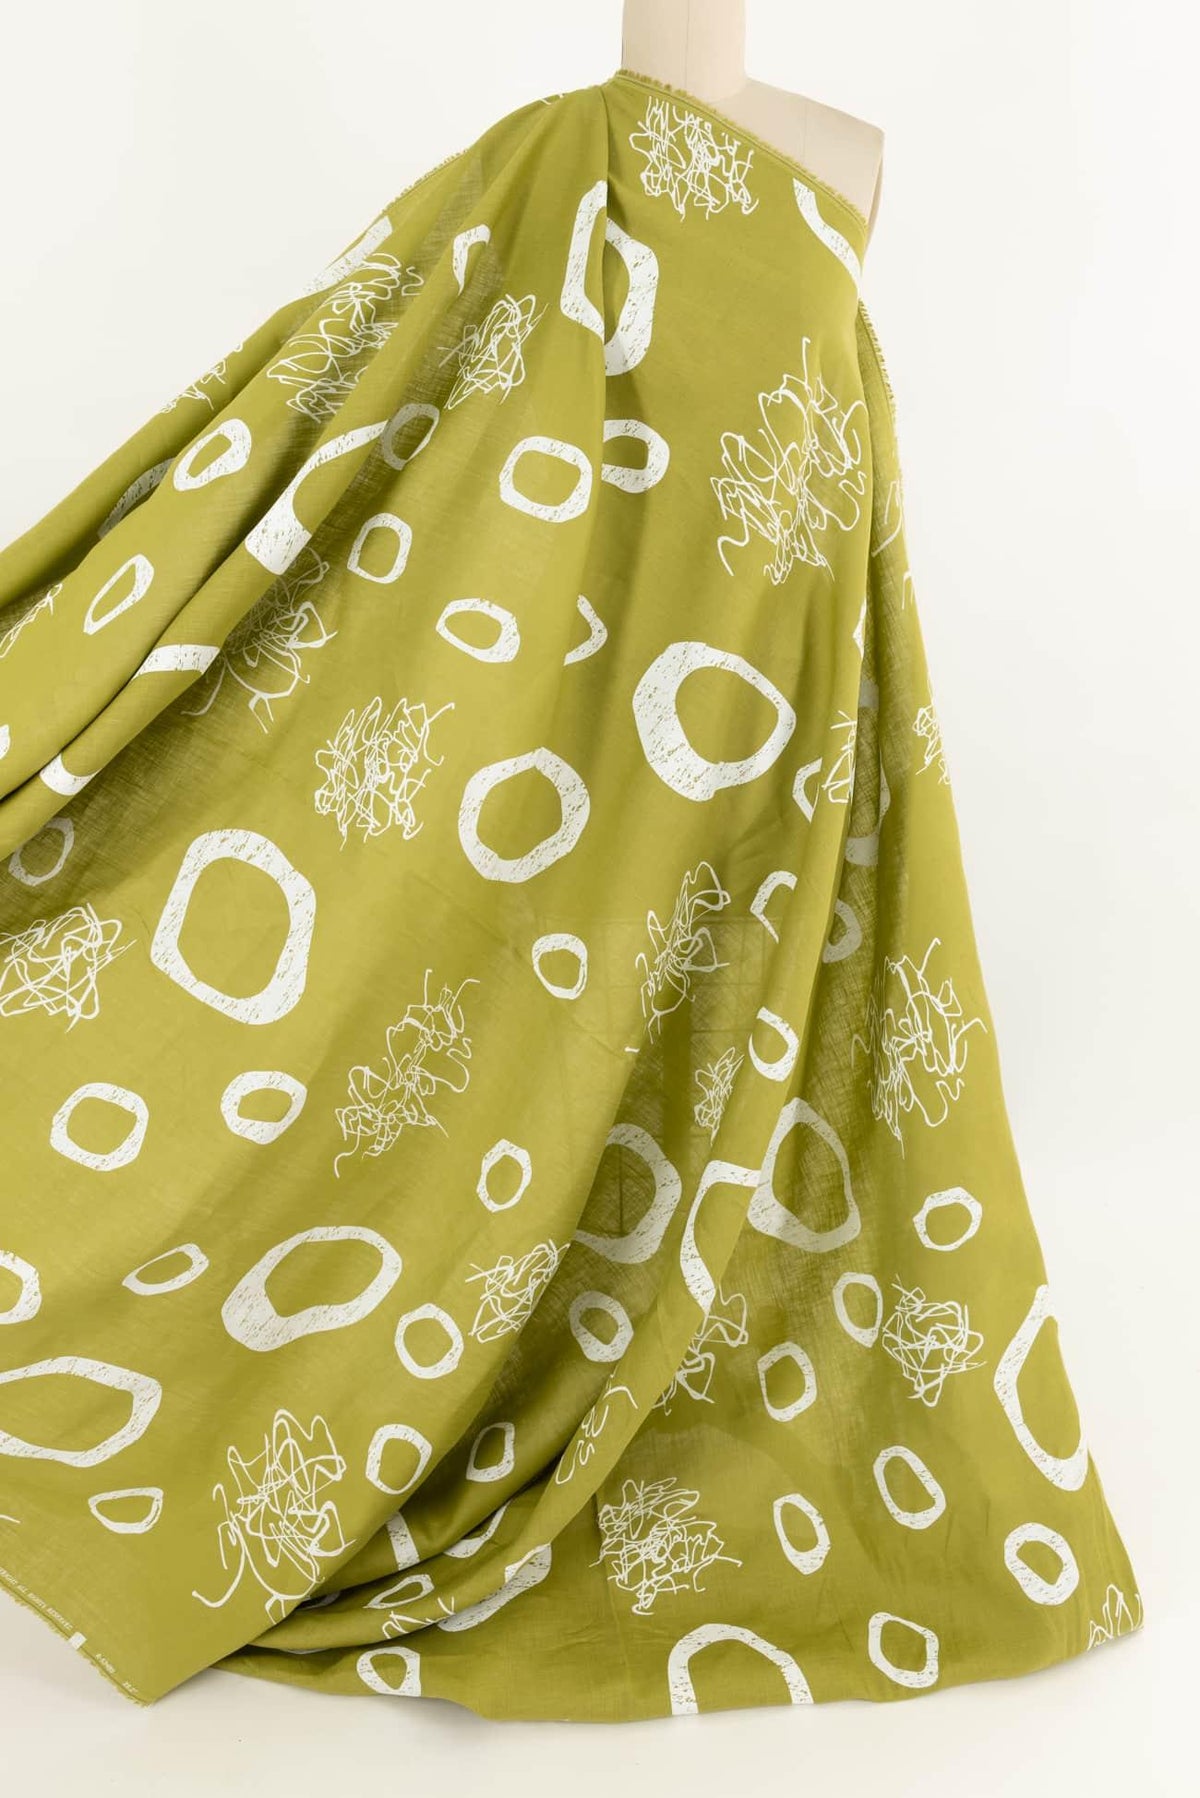 Lichen Cloud Linen Woven - Marcy Tilton Fabrics